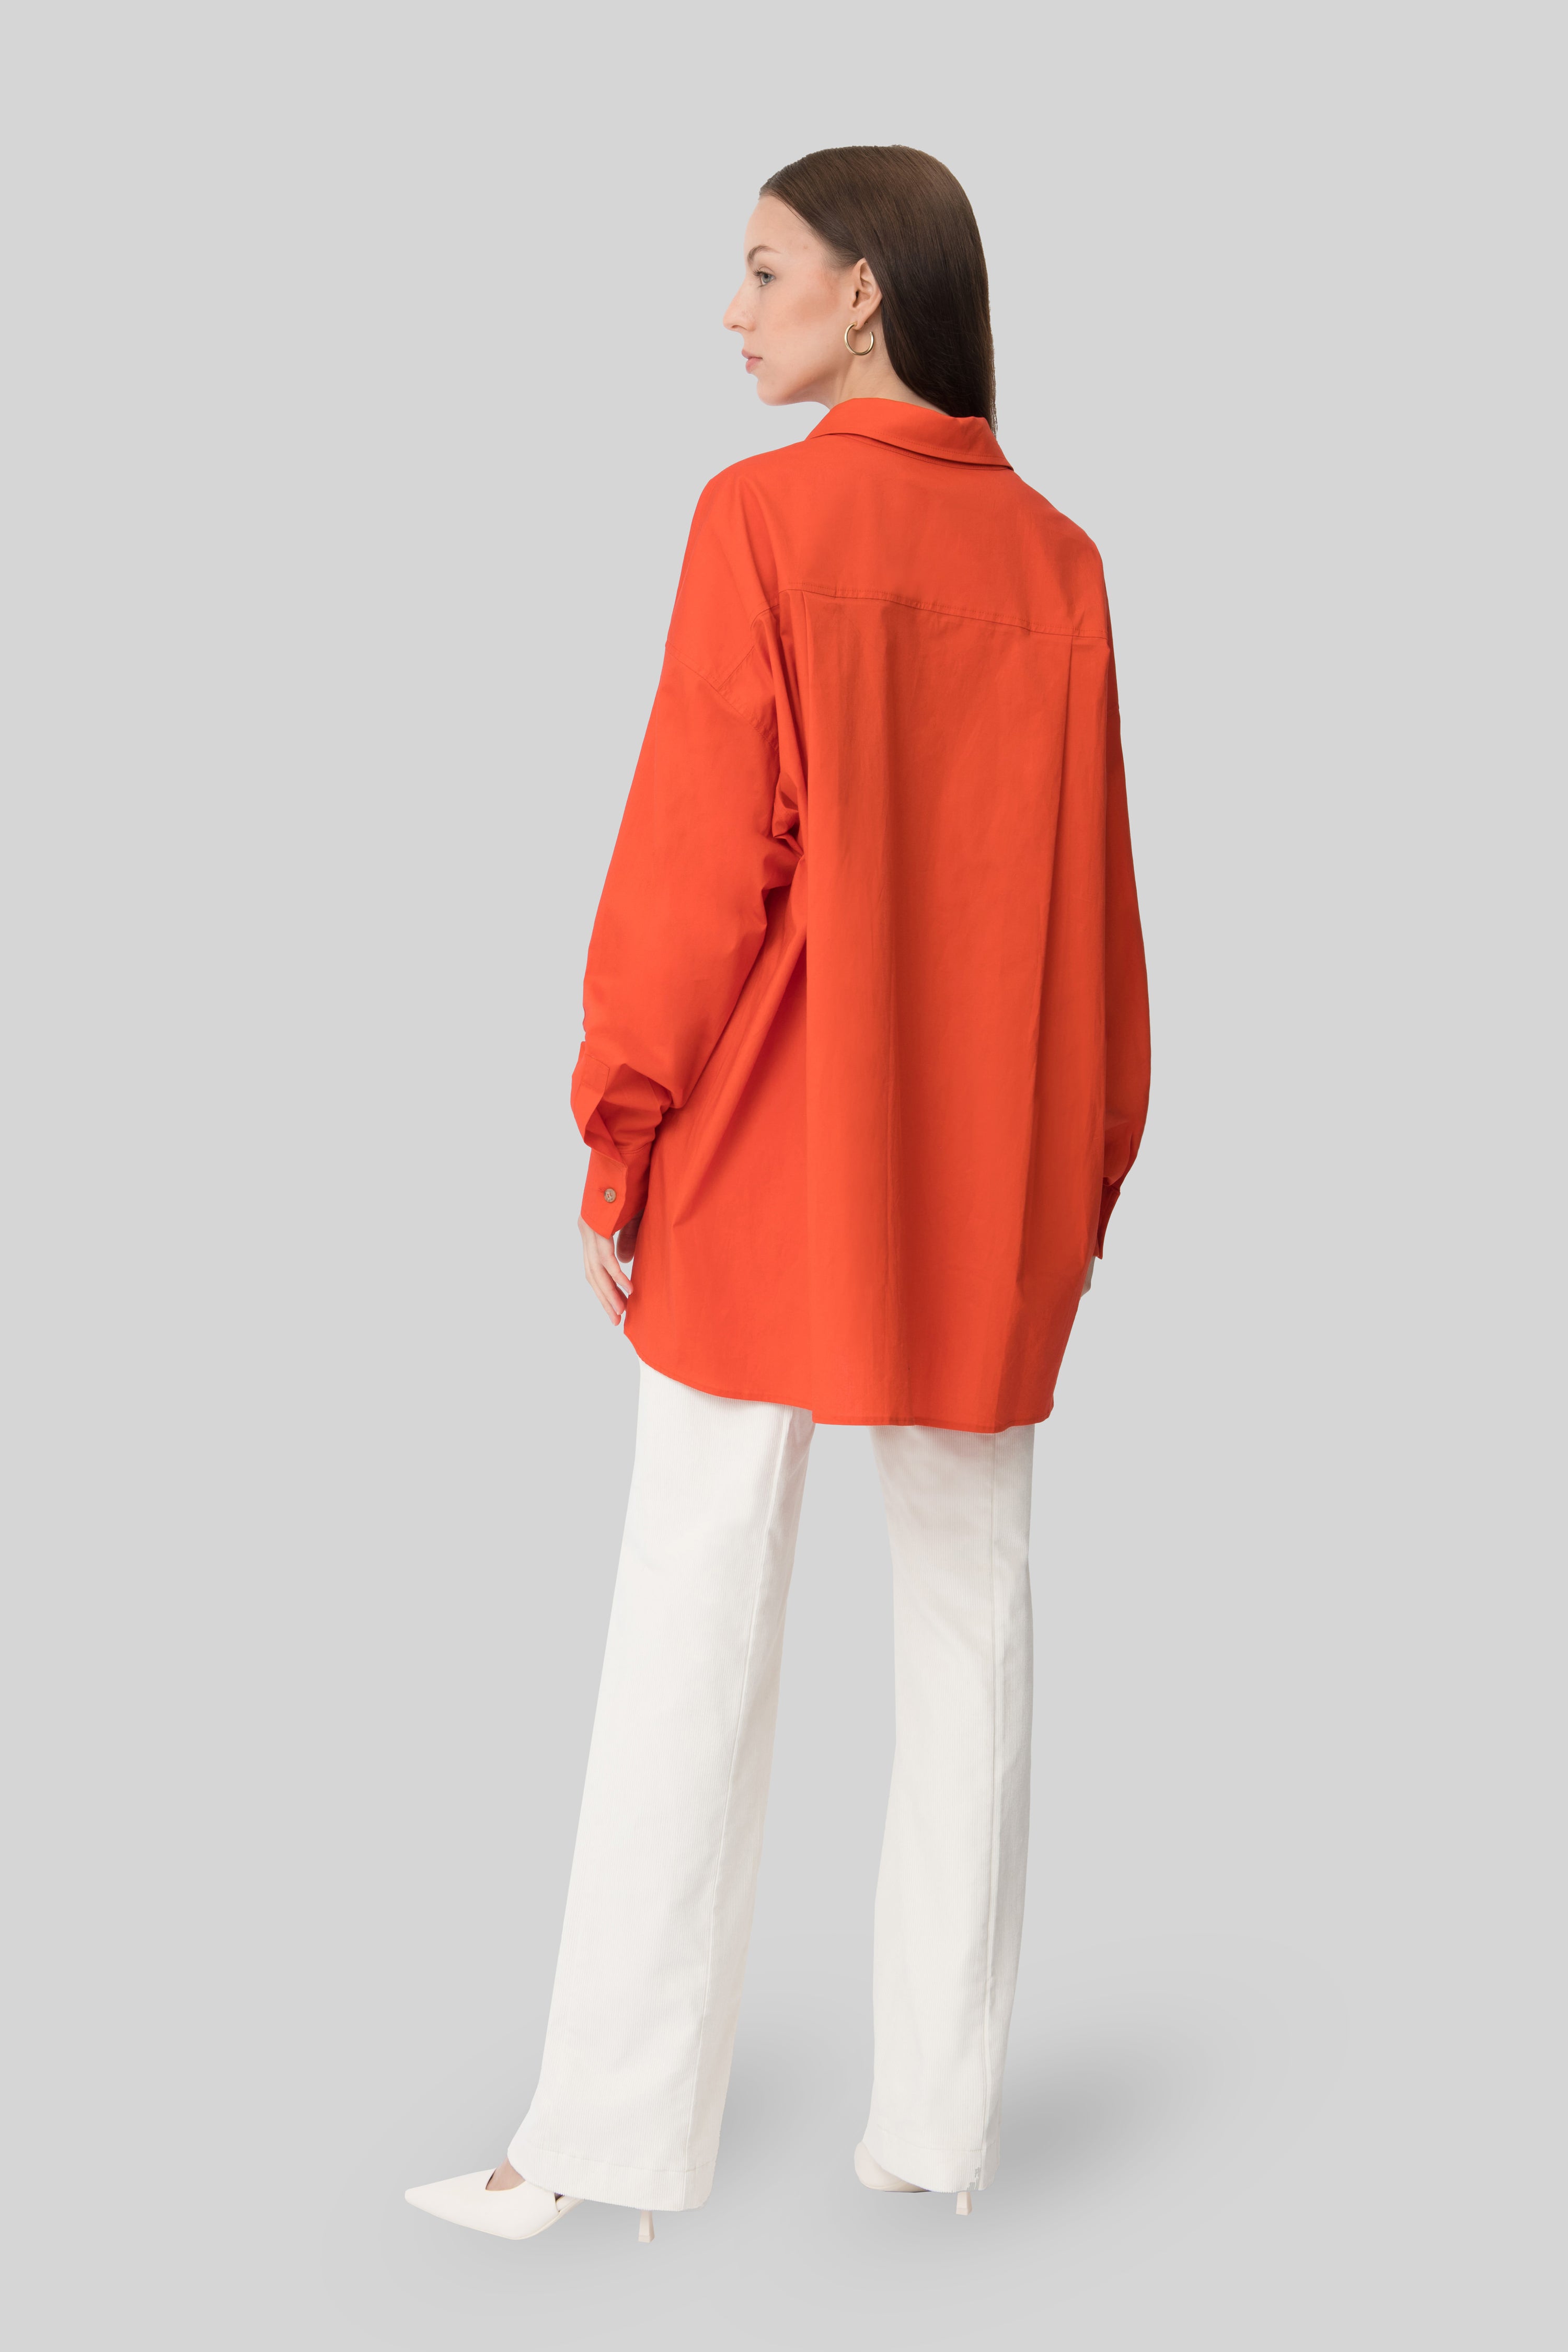 The Orange Oversize Cotton Shirt